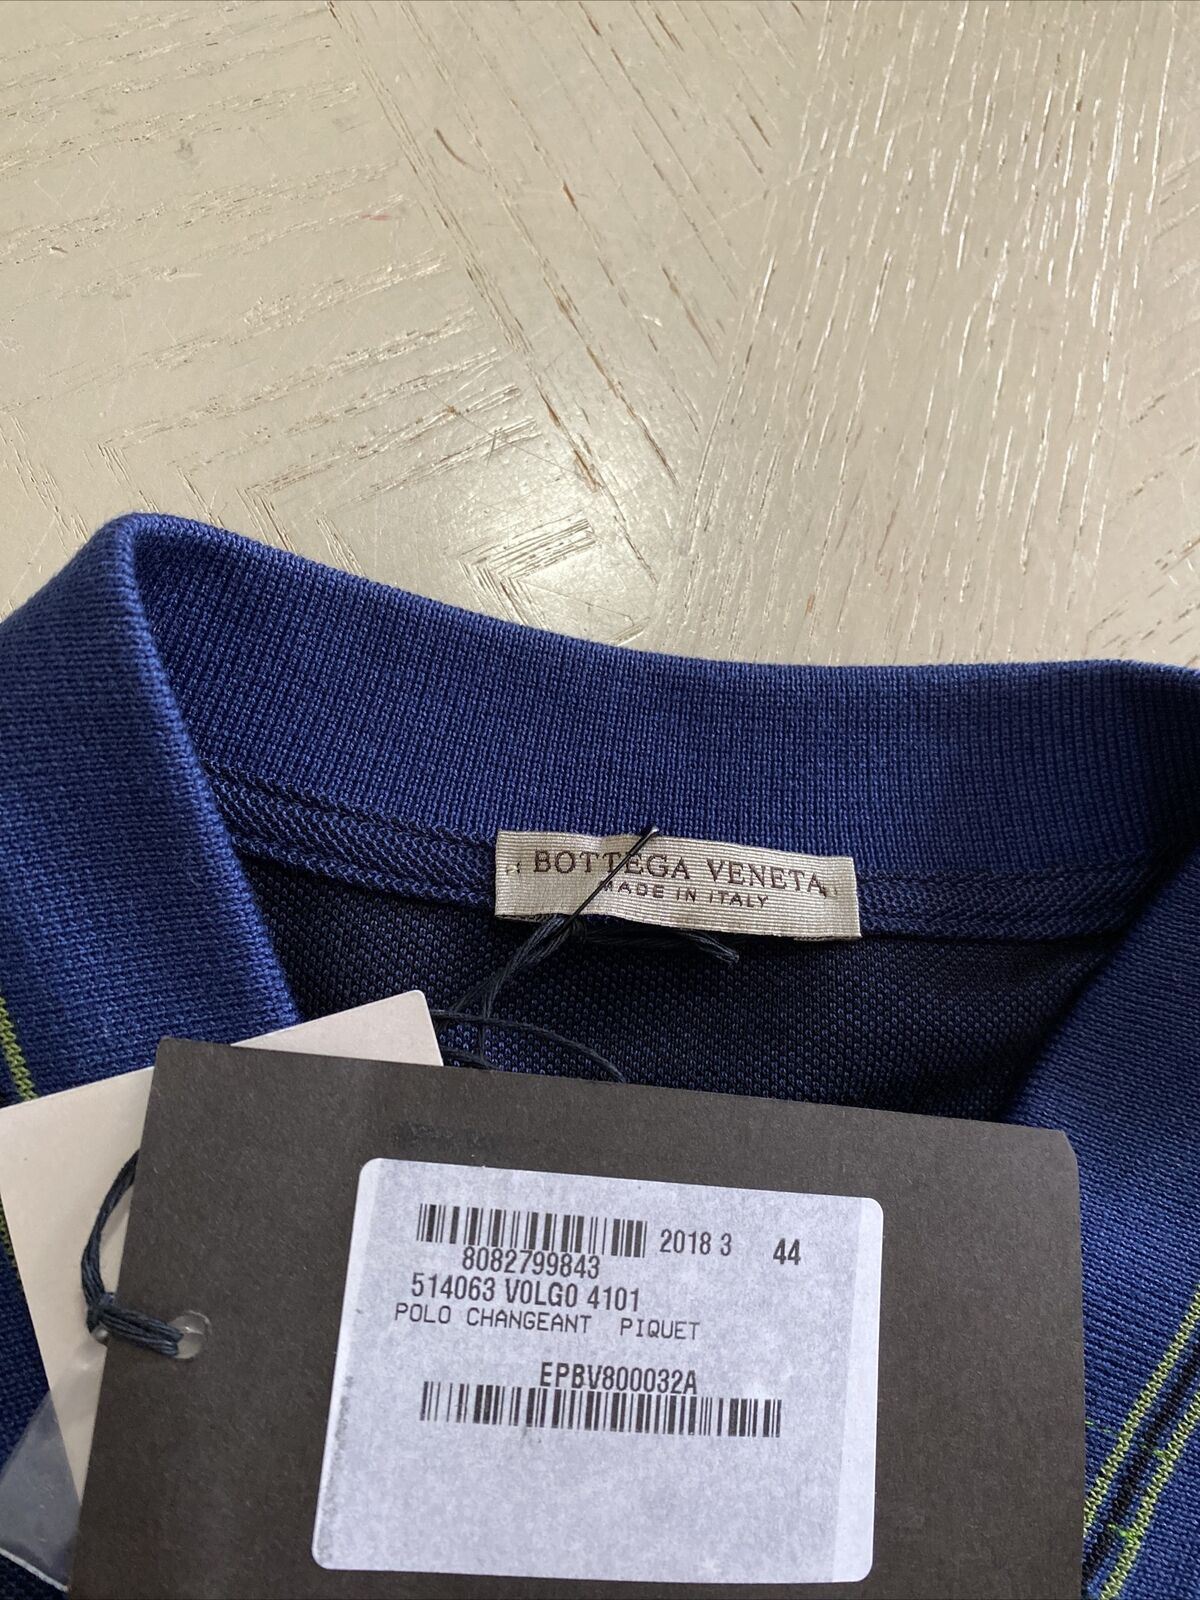 Мужская рубашка-поло Bottega Veneta, синяя, XS, 390 долларов США, США (44 ЕС), Италия